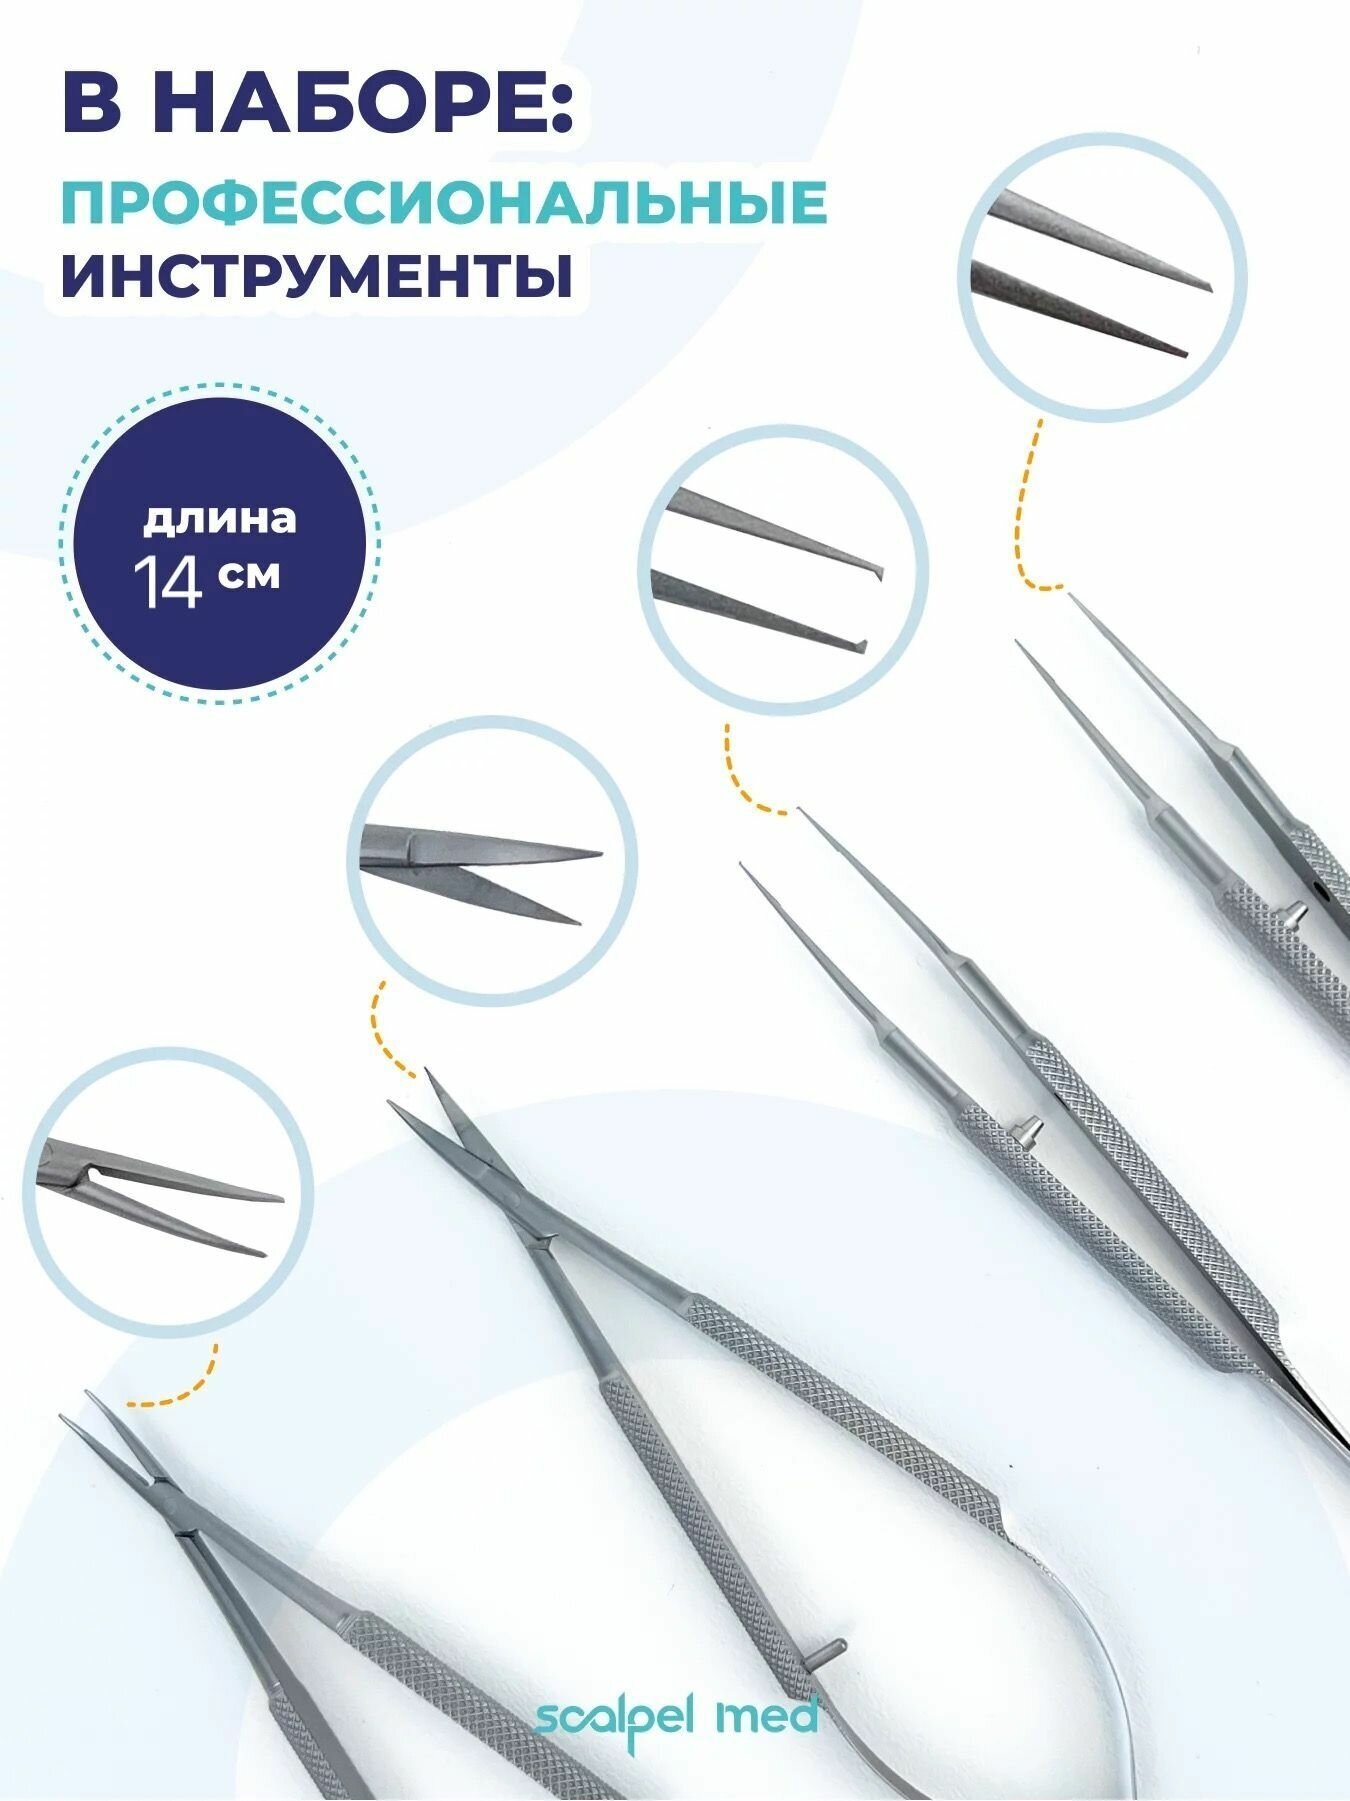 Набор микрохирургических инструментов